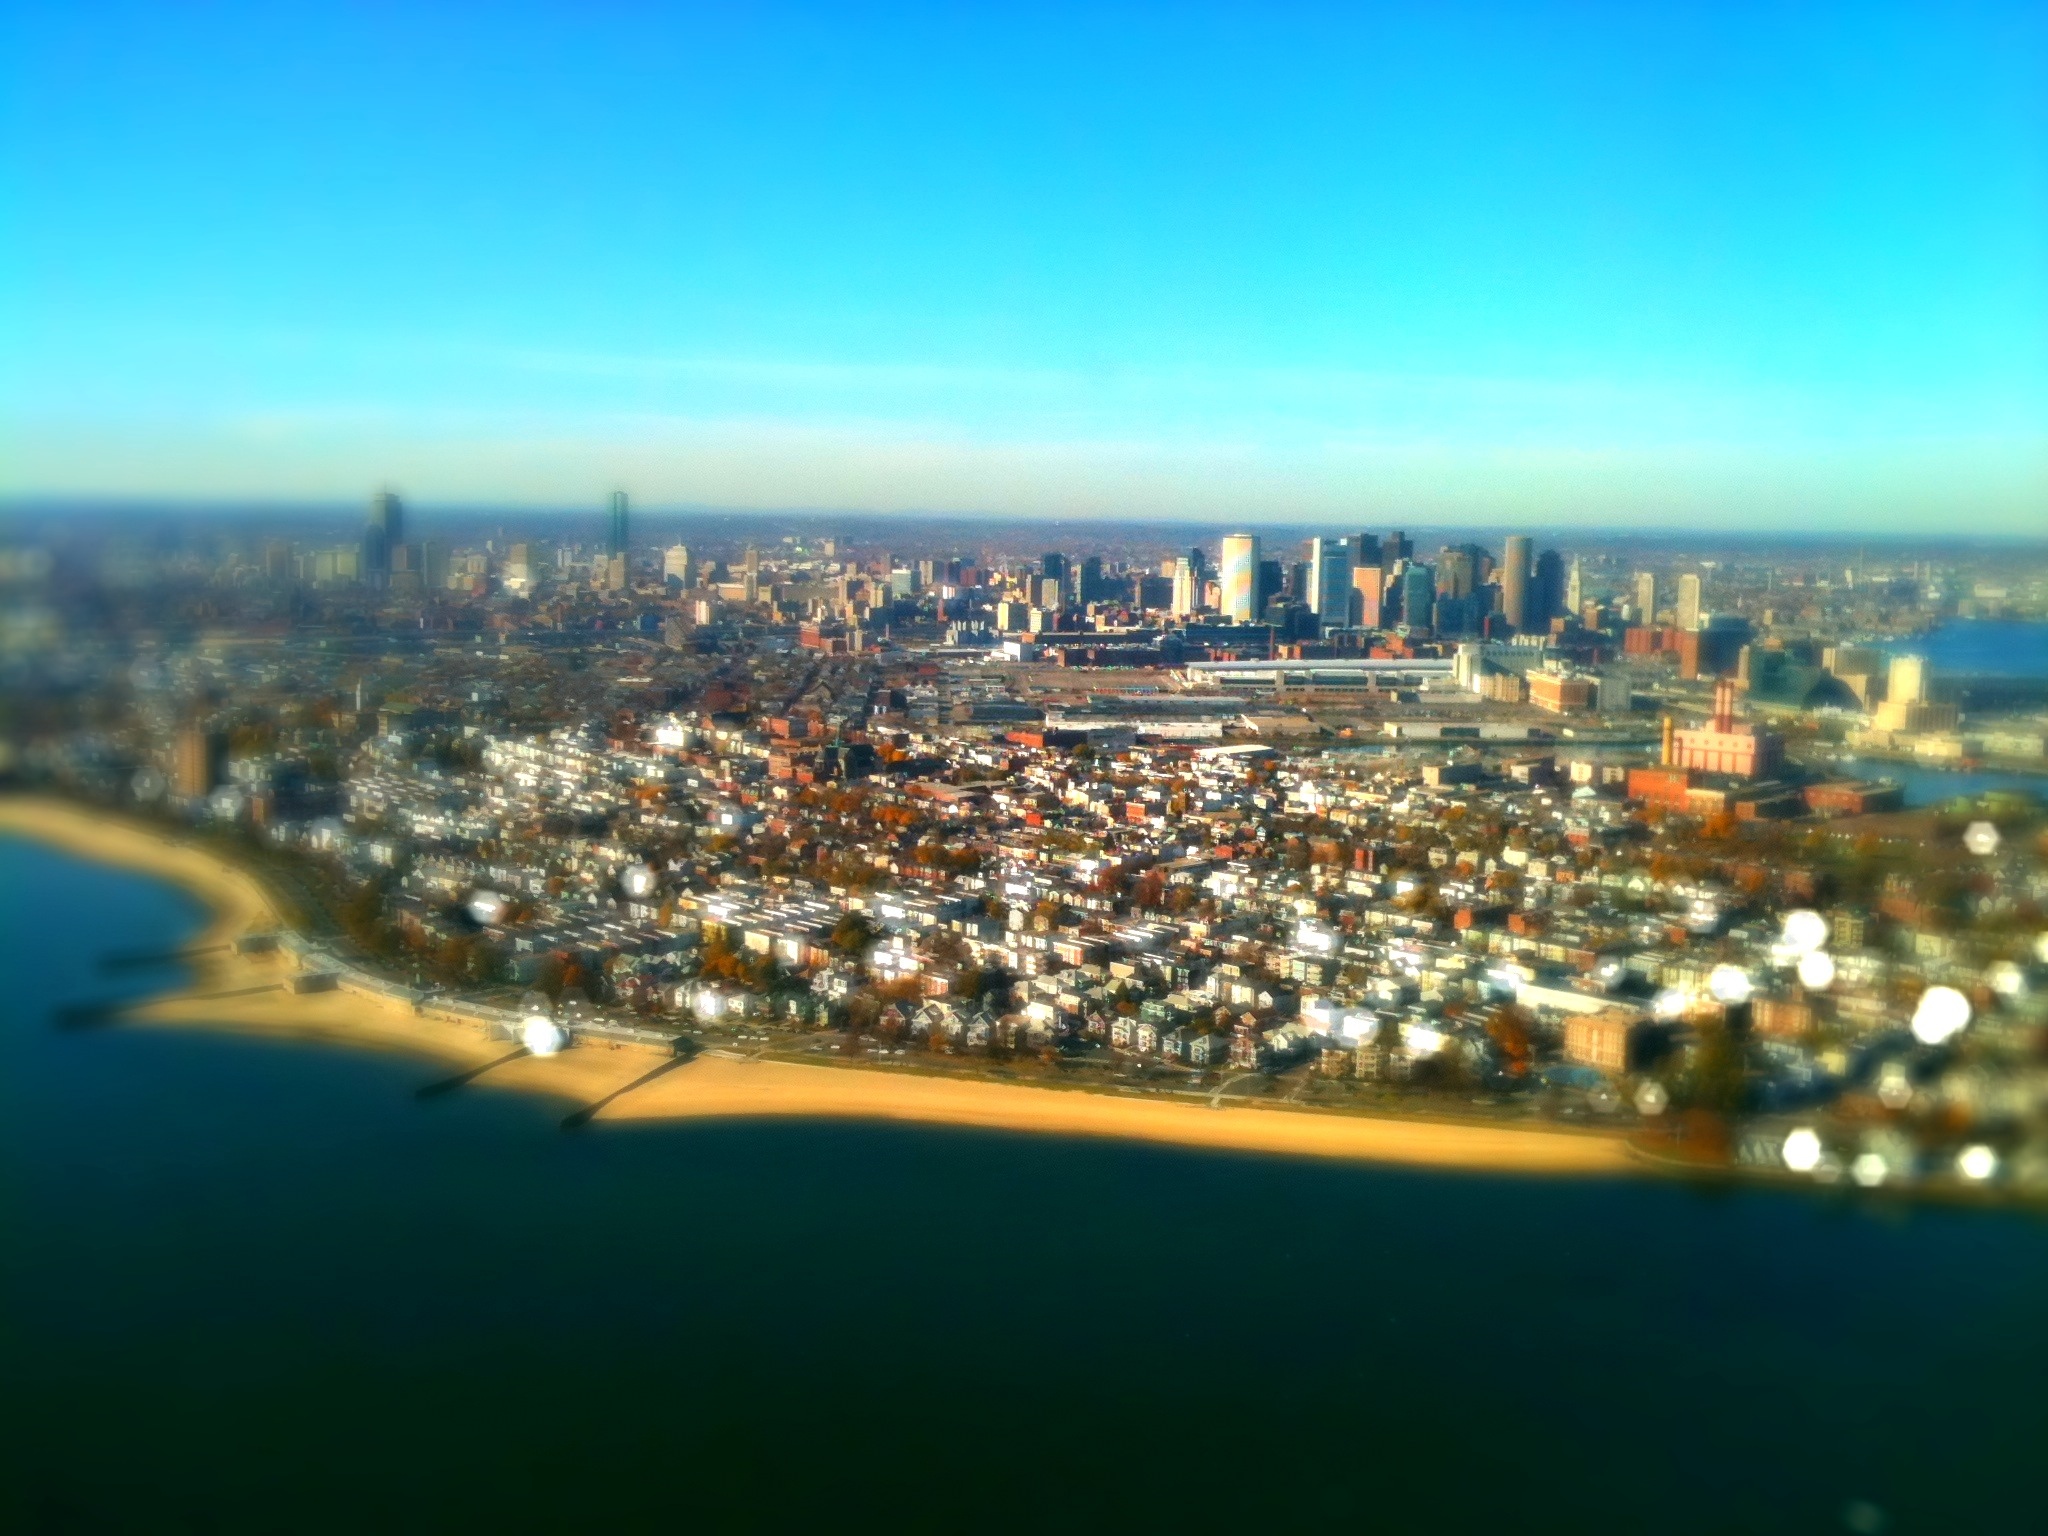 Day 73 – Boston skyline